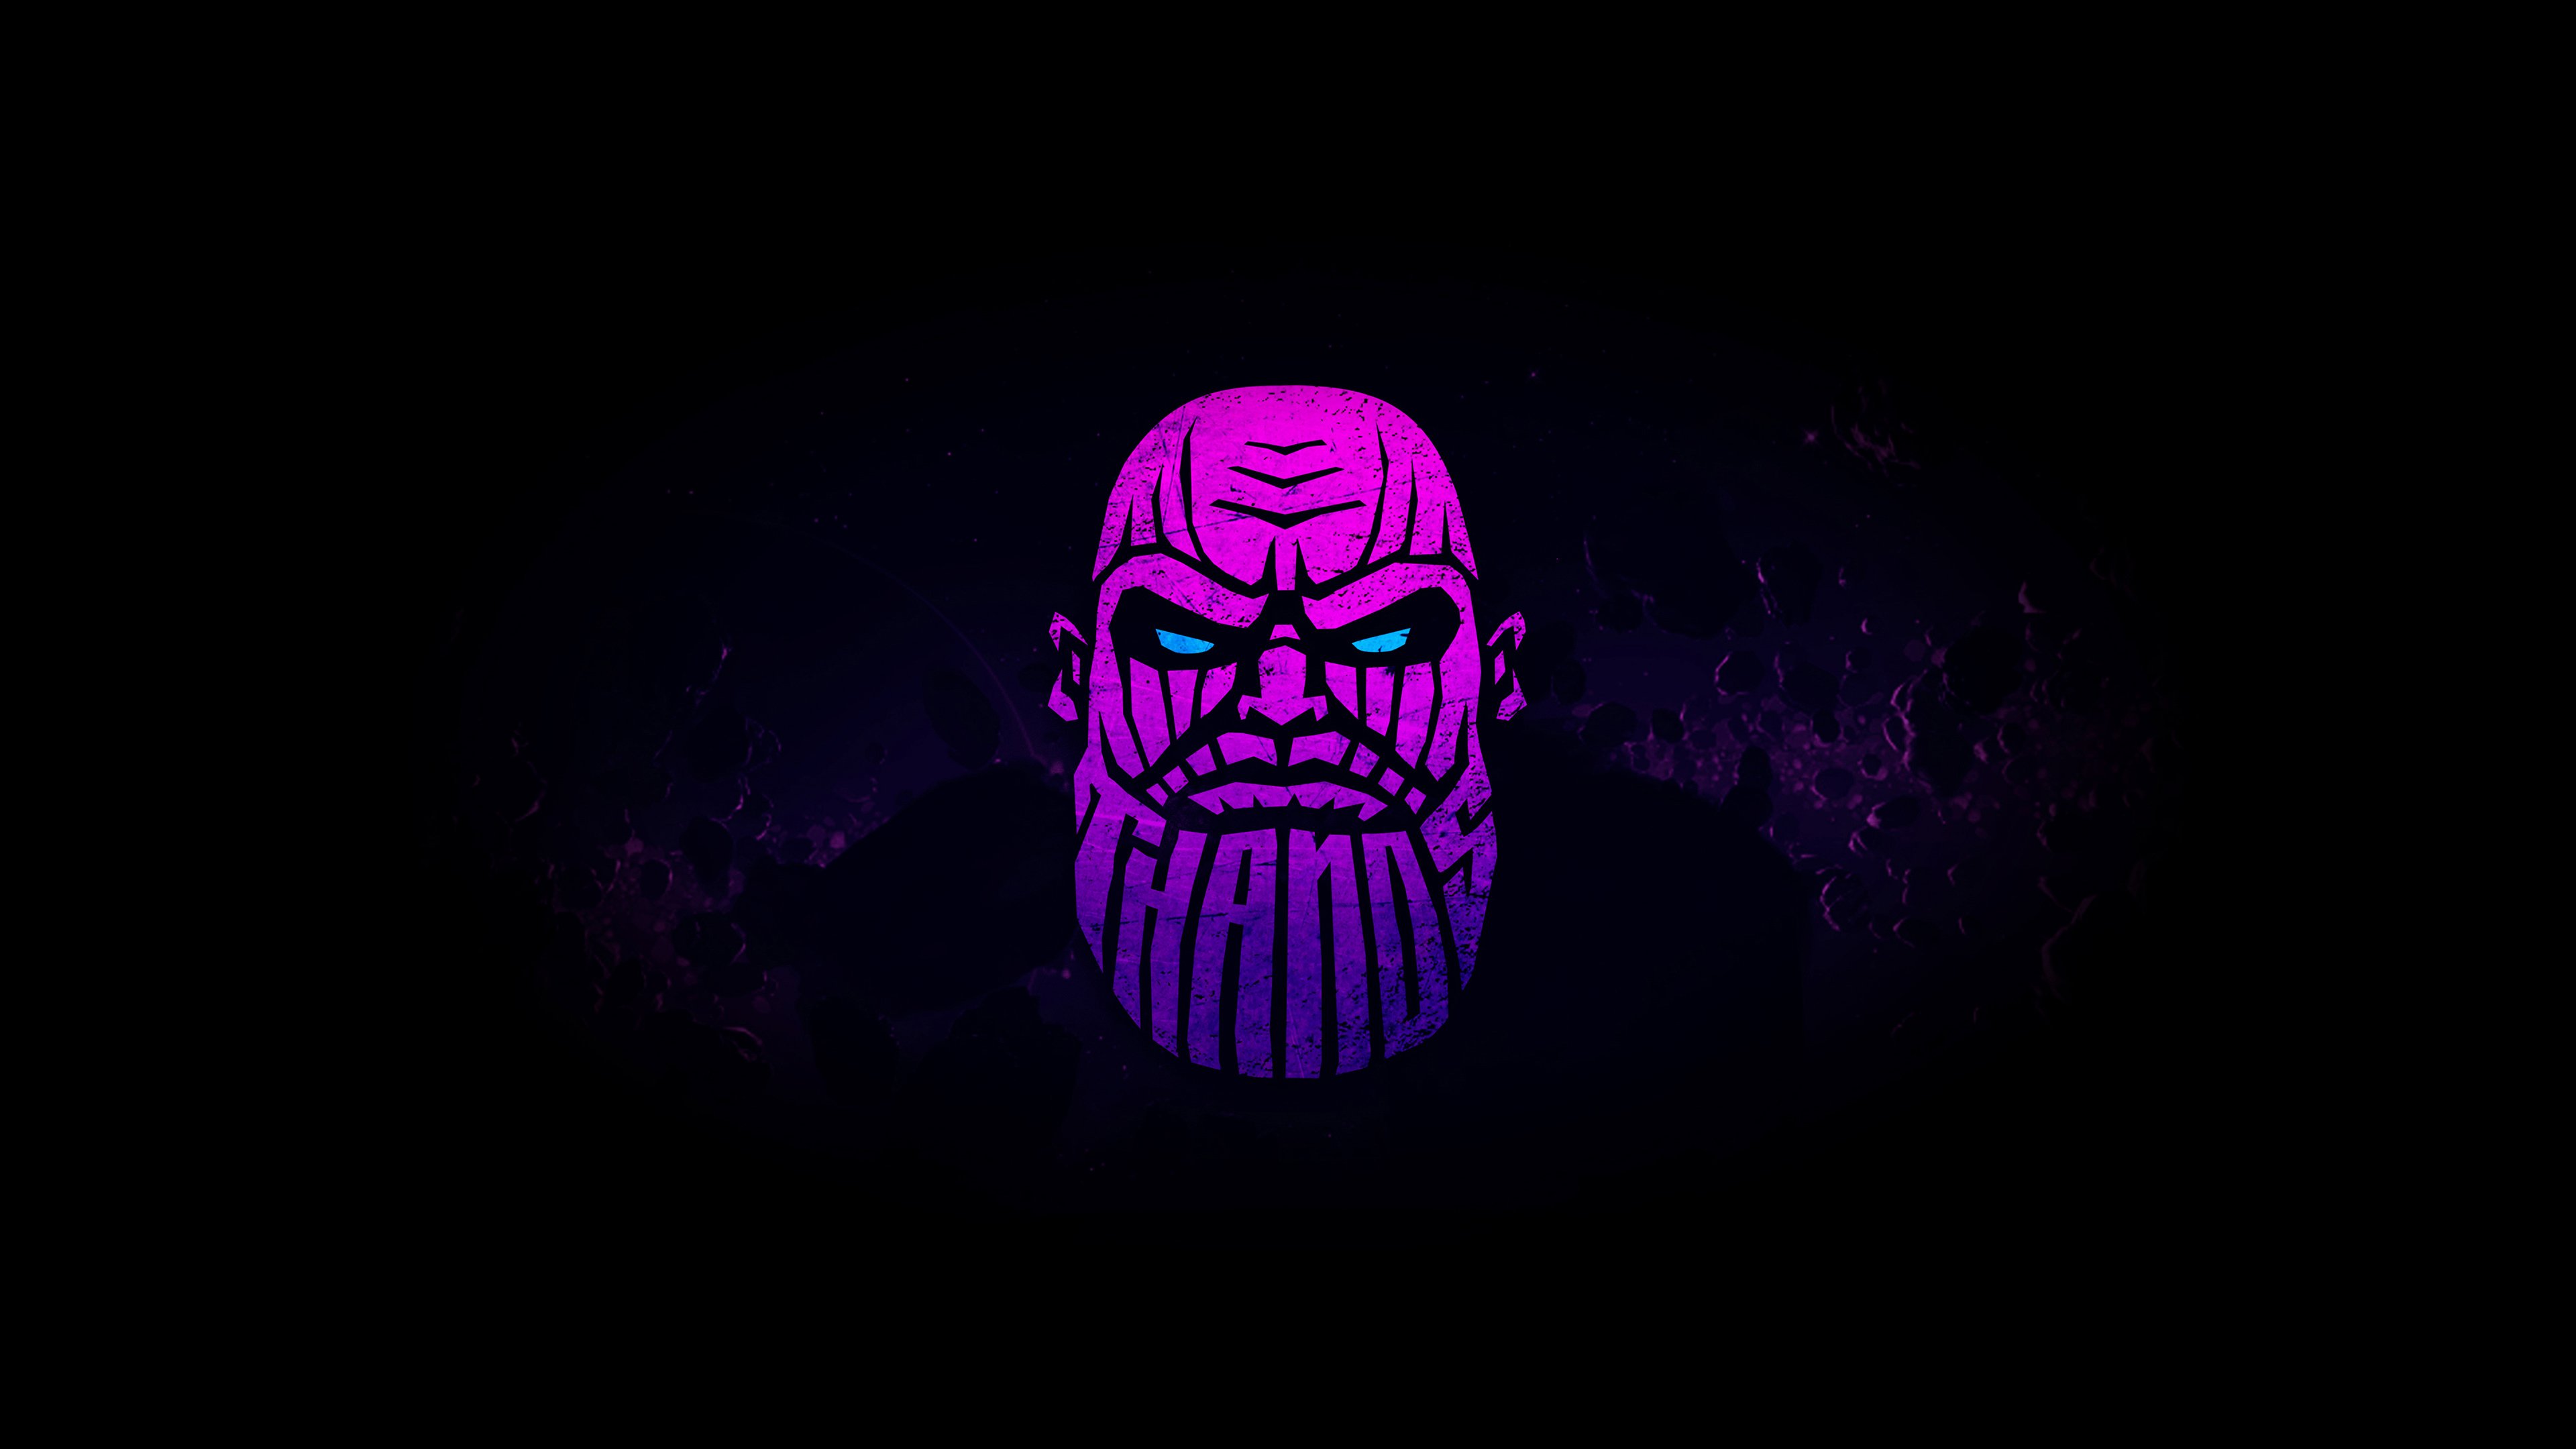 500 Thanos Ảnh Hình Nền Background Đẹp Nhất Miễn Phí Dành Cho Bạn Tải  Về Thanos Tại Zicxa Photos